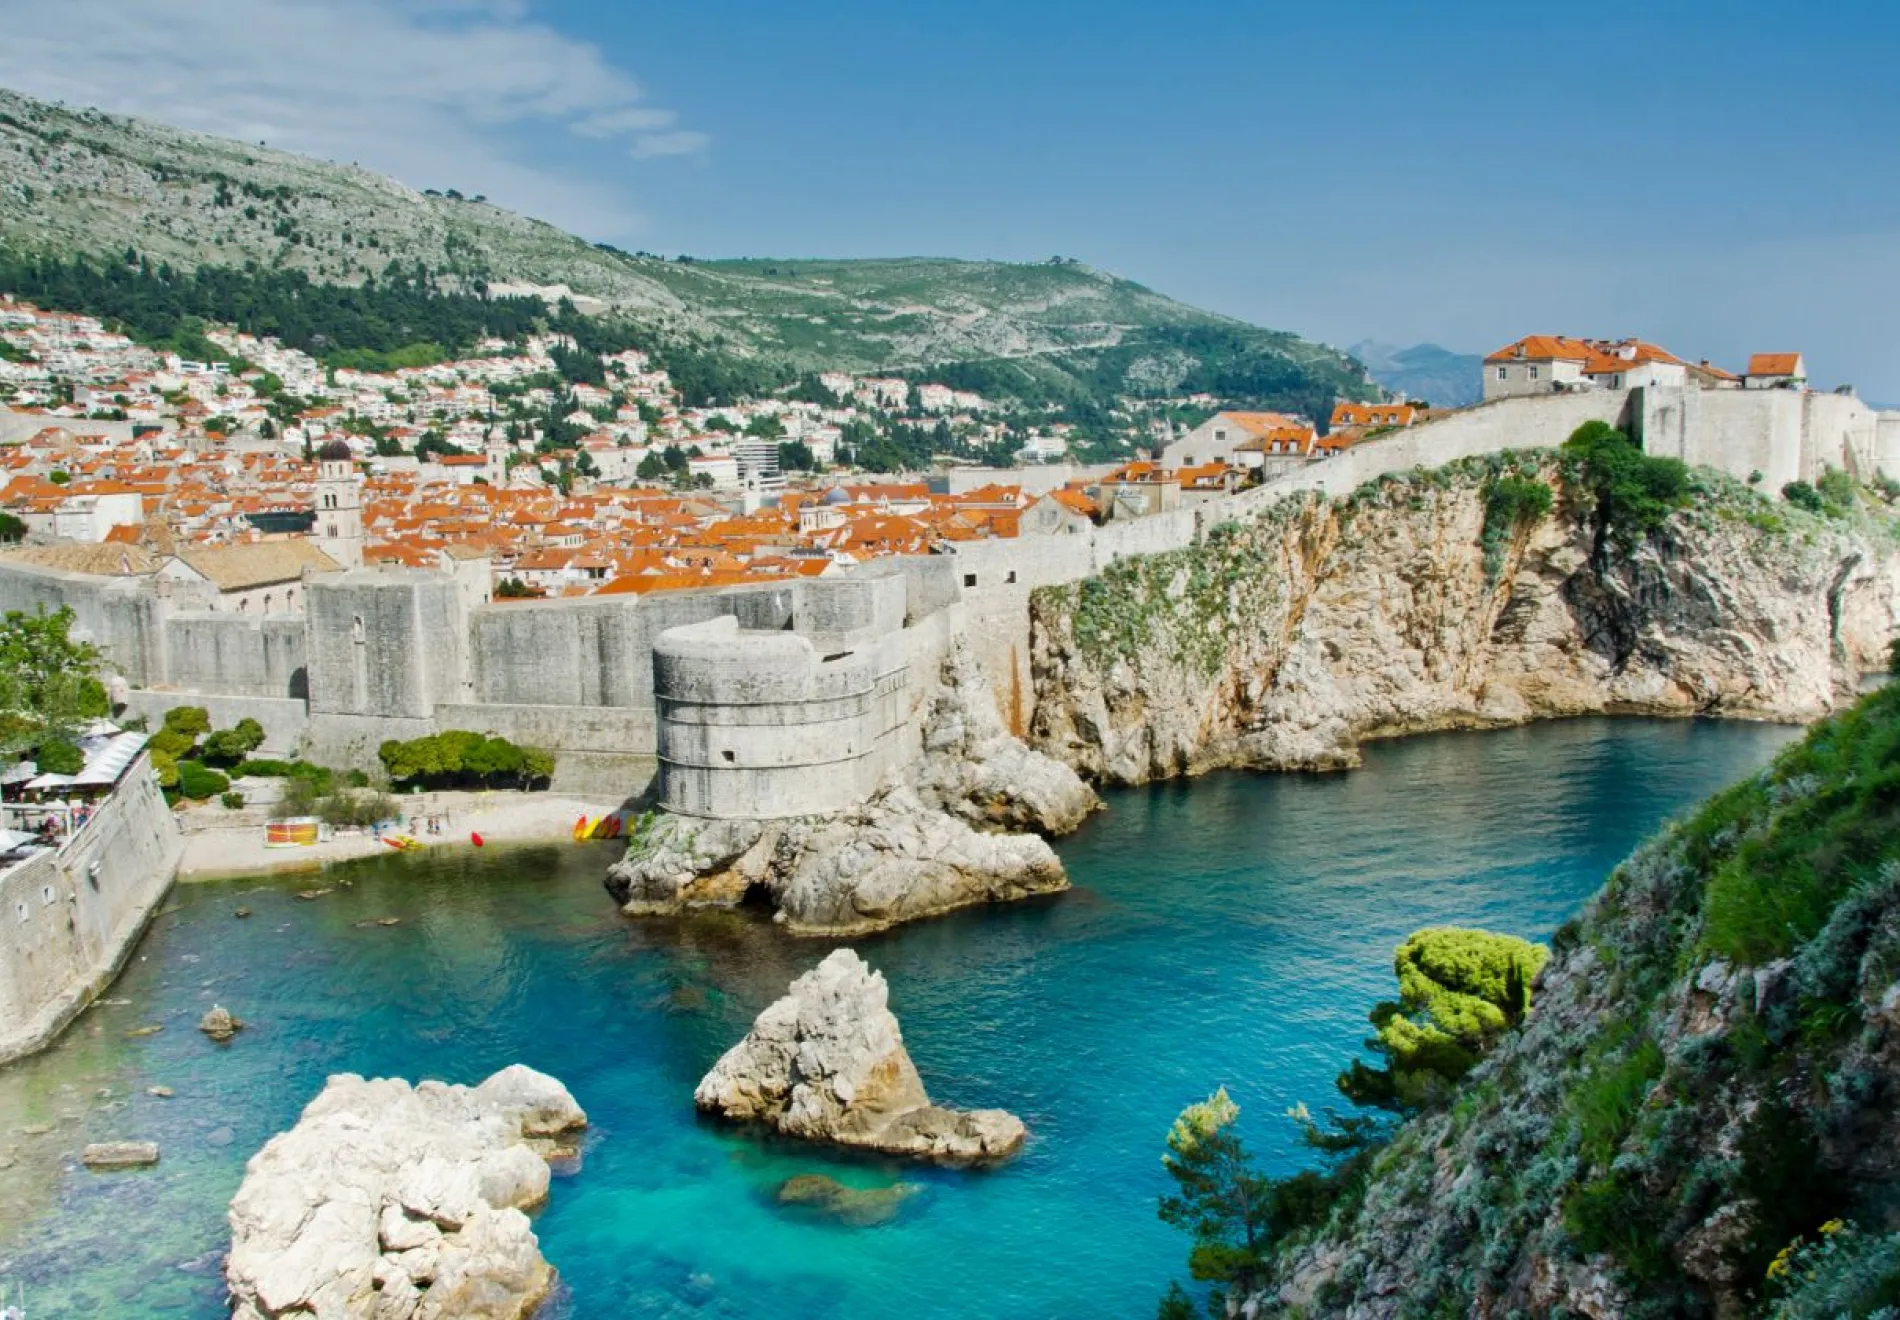 Dubrovnik-UNESCO